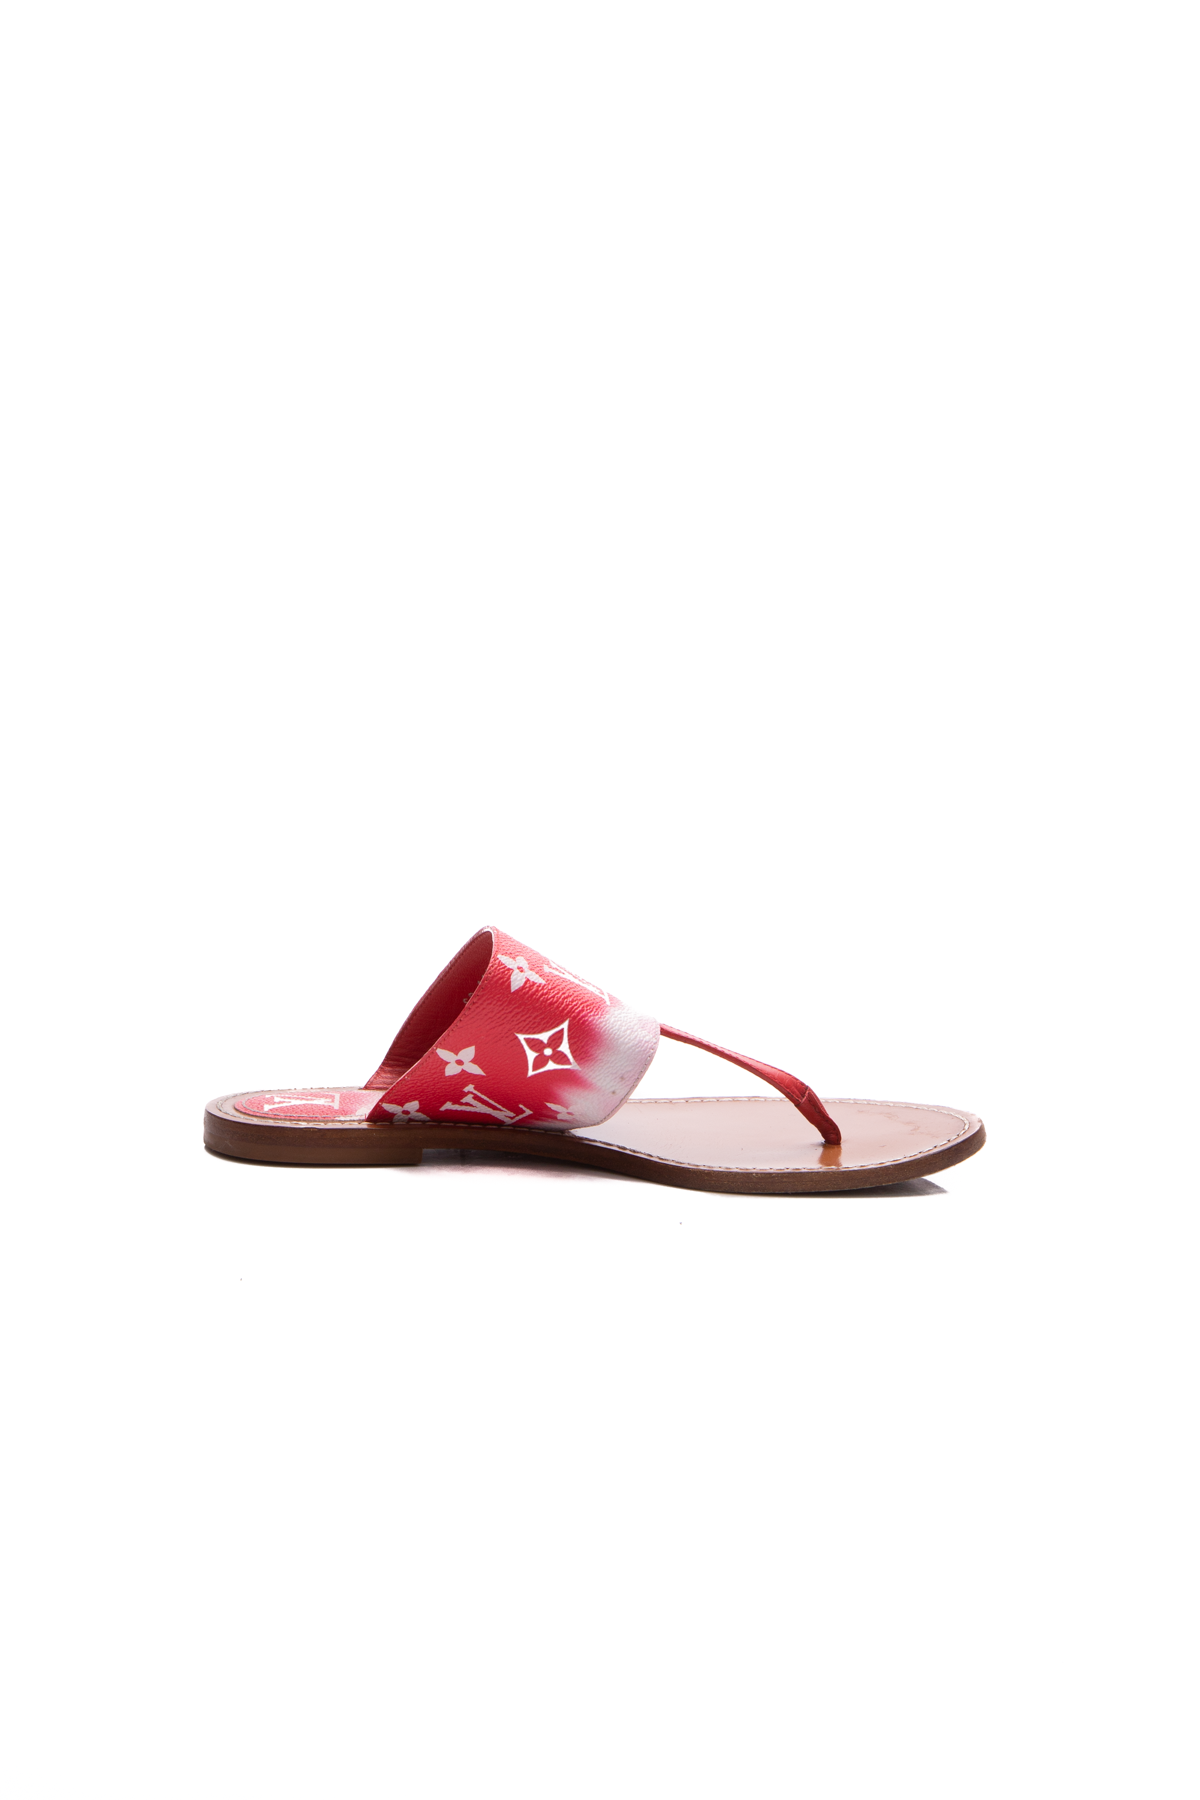 Louis Vuitton Escale Palma Sandals - Size 38